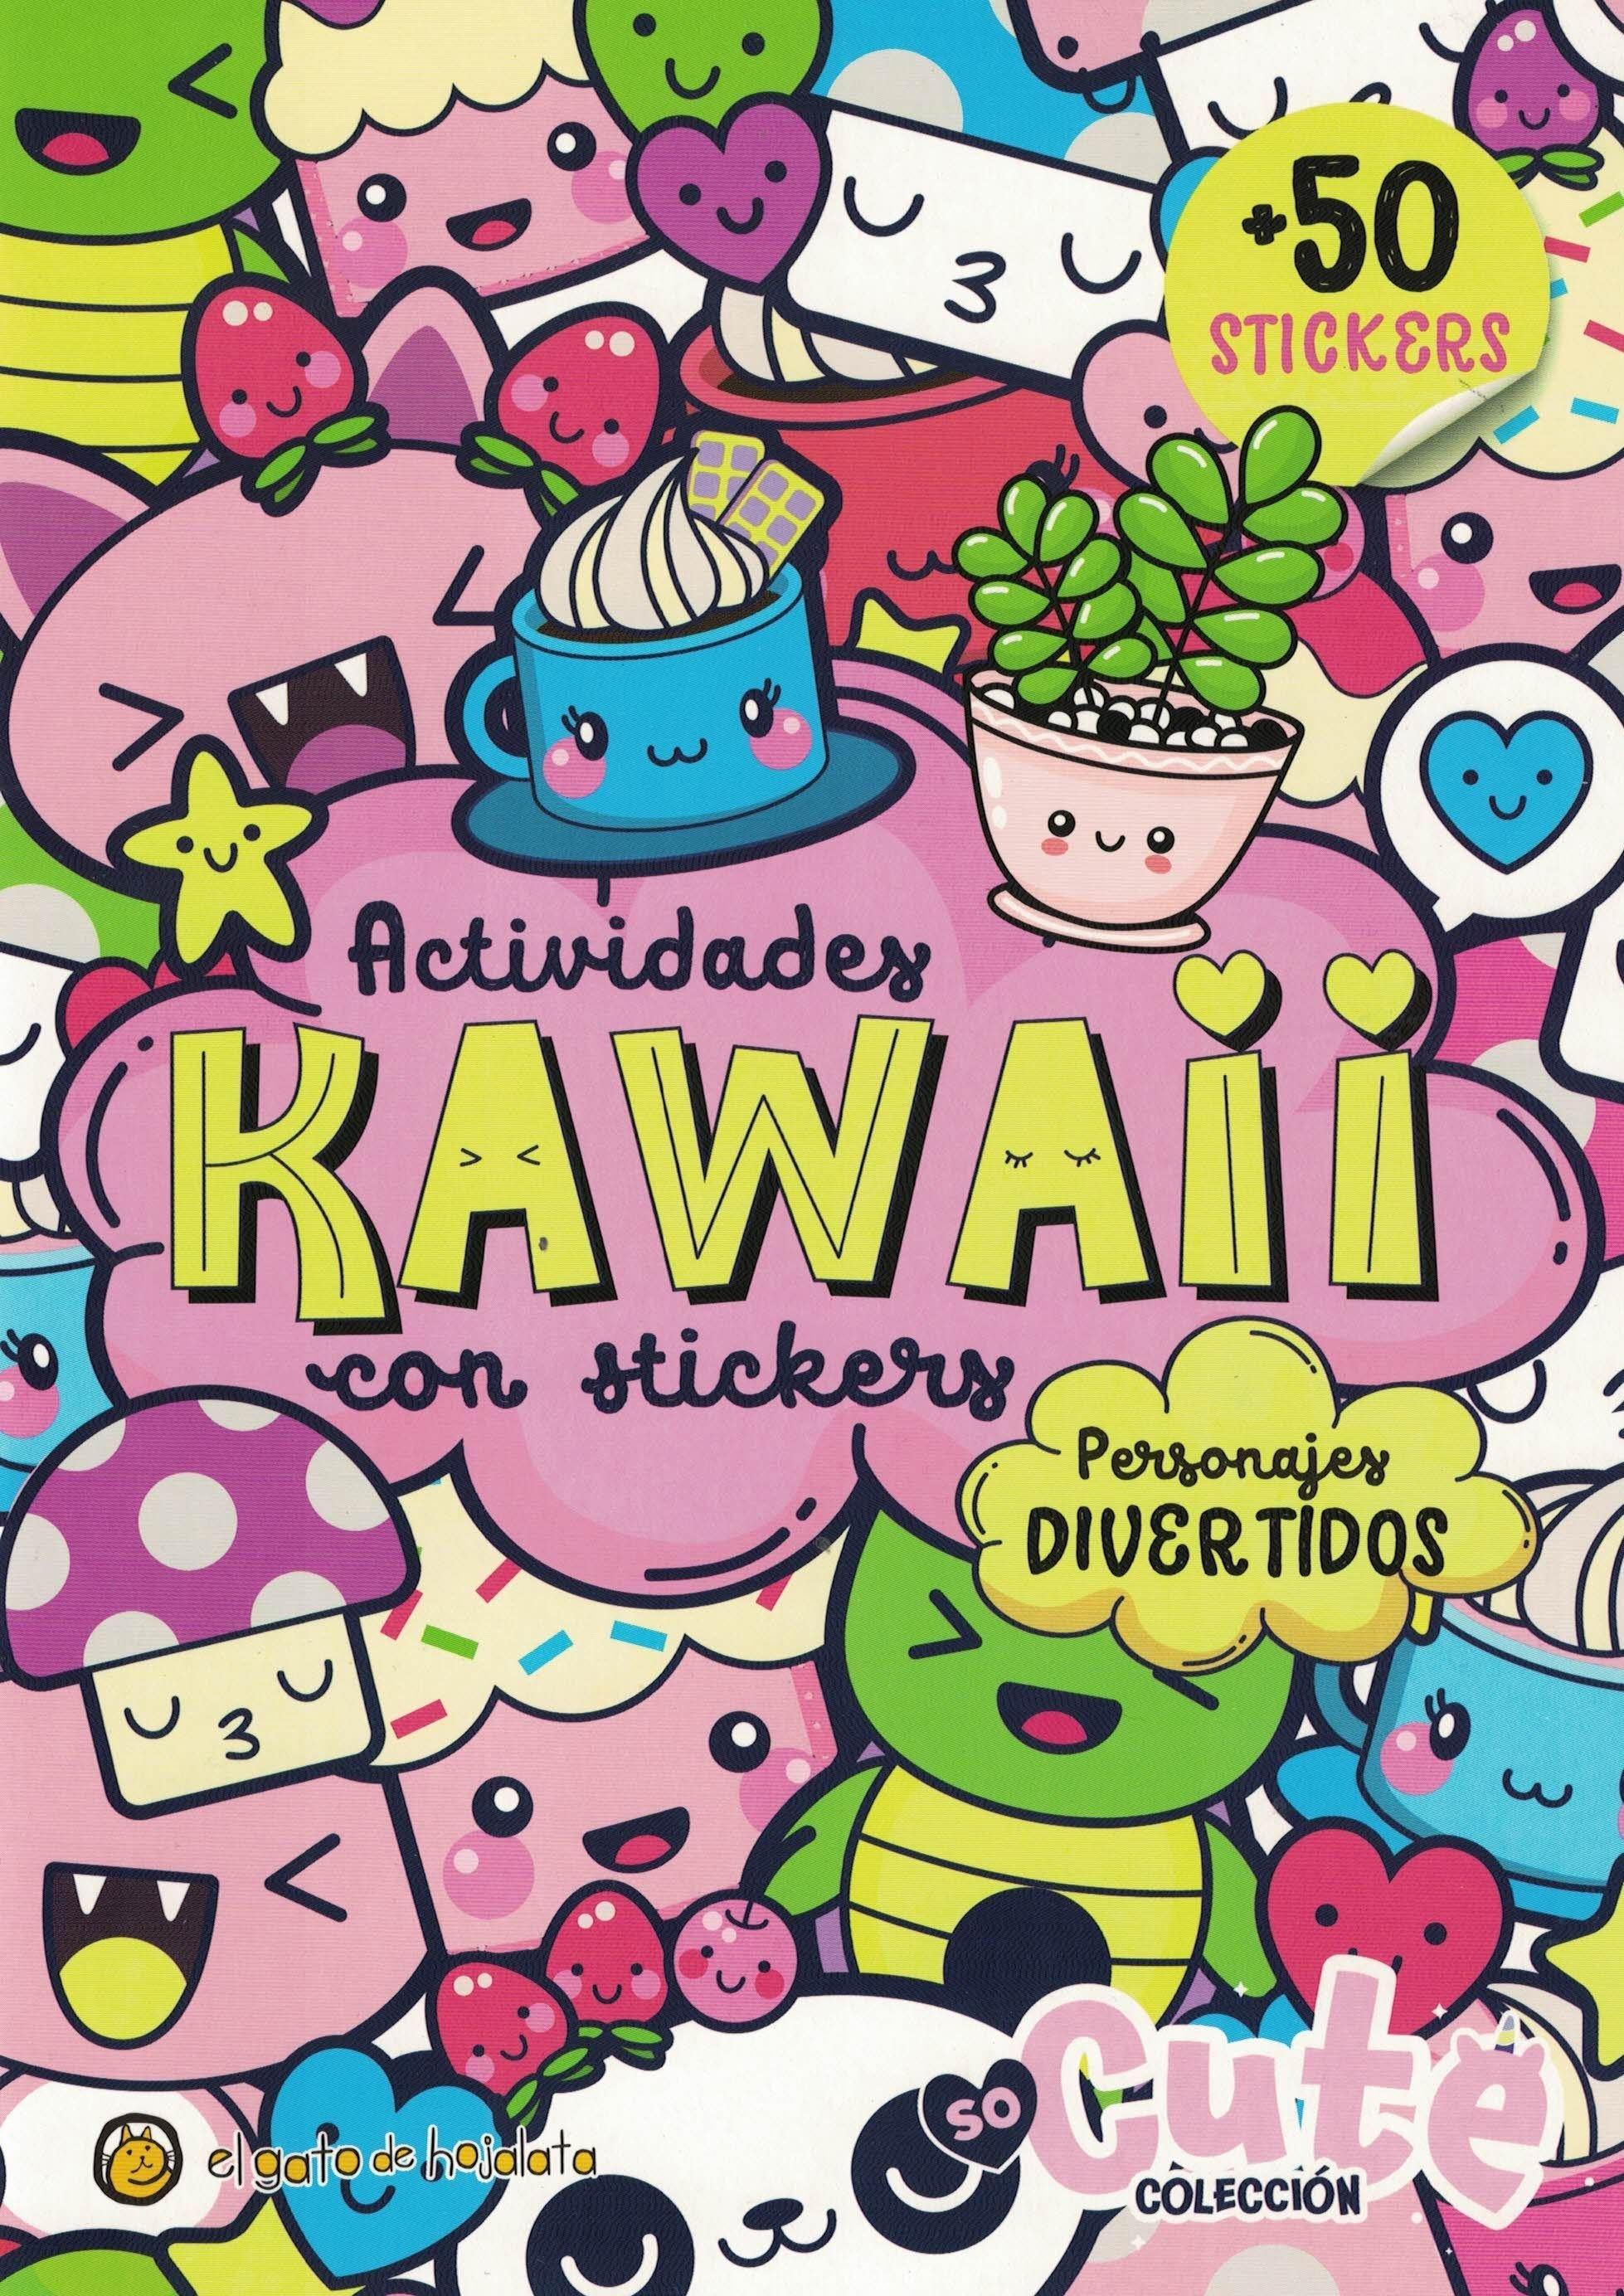 Actividades kawaii con stickers